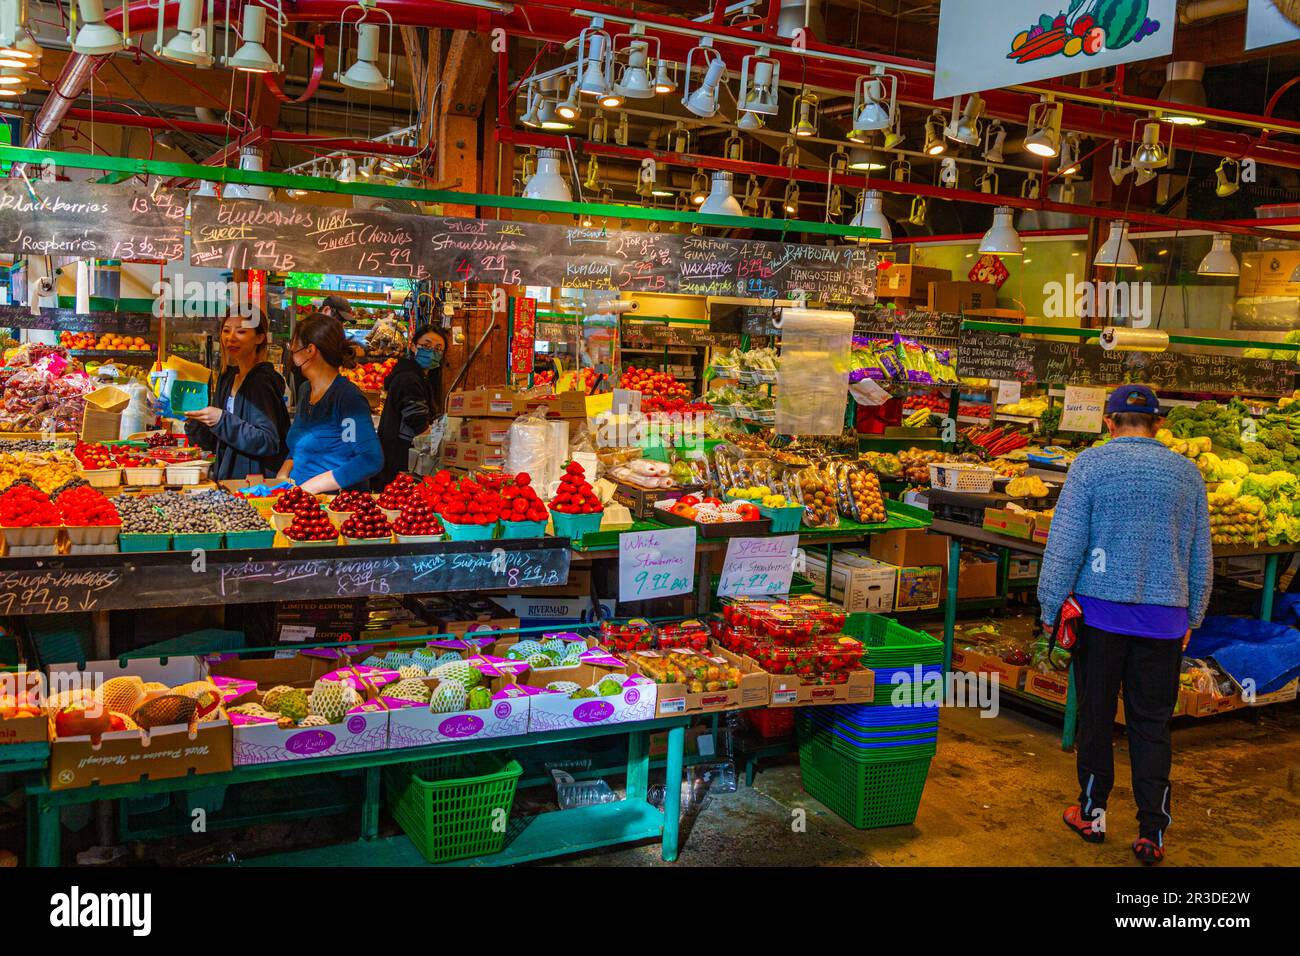 Interior view of Granville Island Public Market in Vancouver Canada Stock Photo